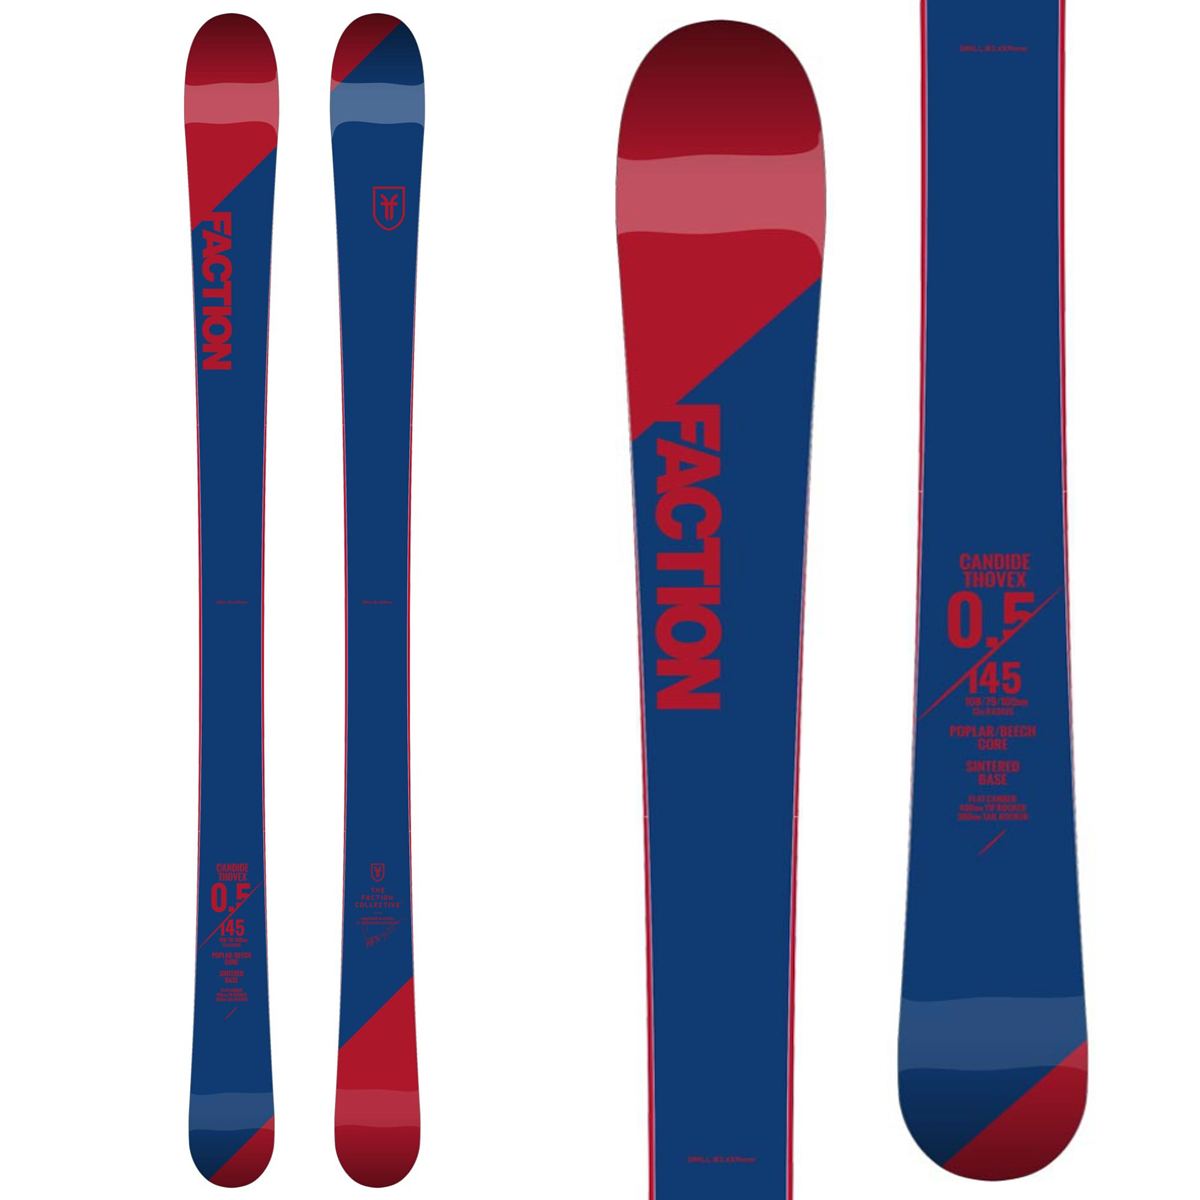 Ski Candide 0.5 2019